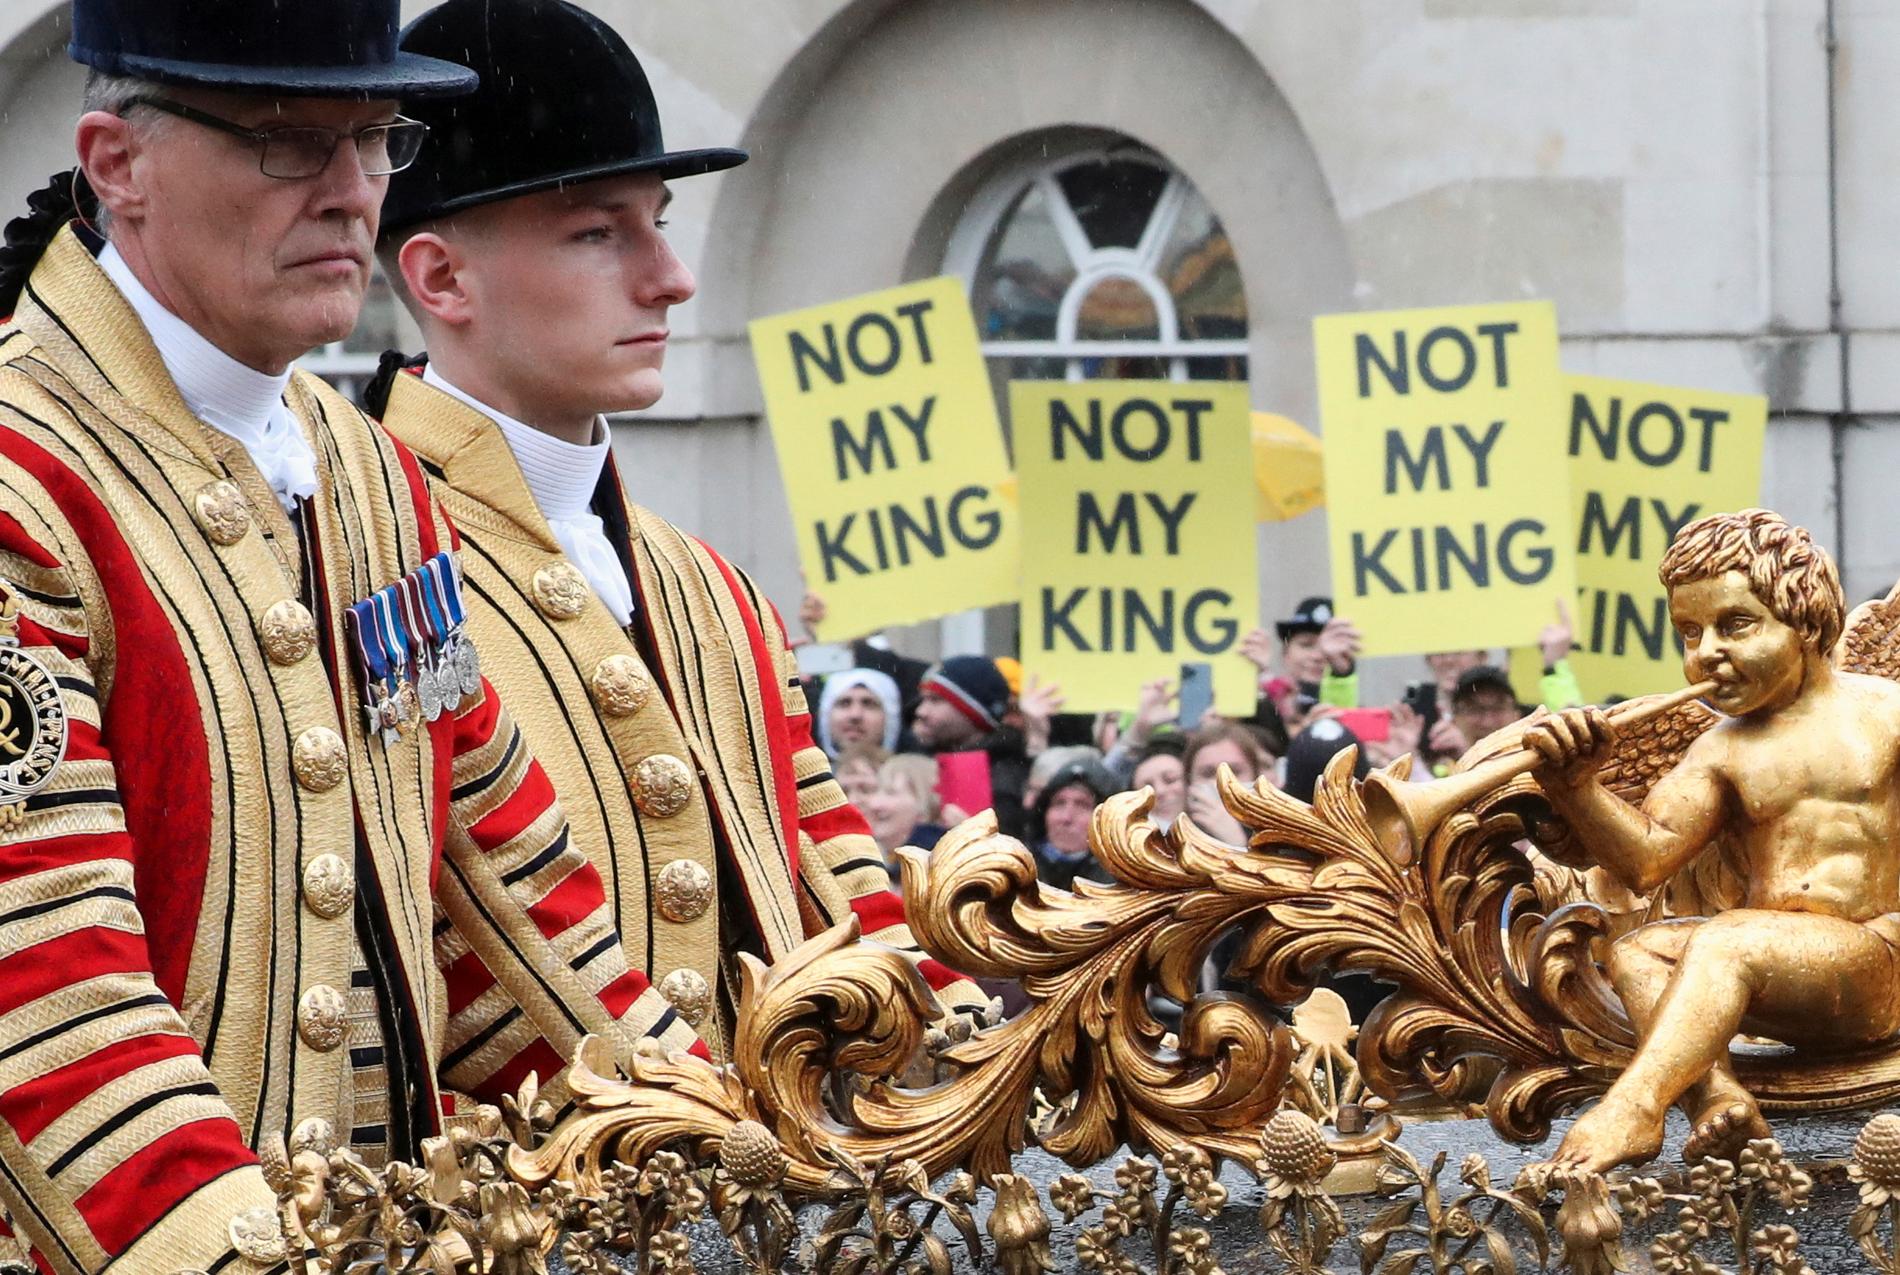 London firade sin kung – men det fanns även del som som inte var så förtjusta.